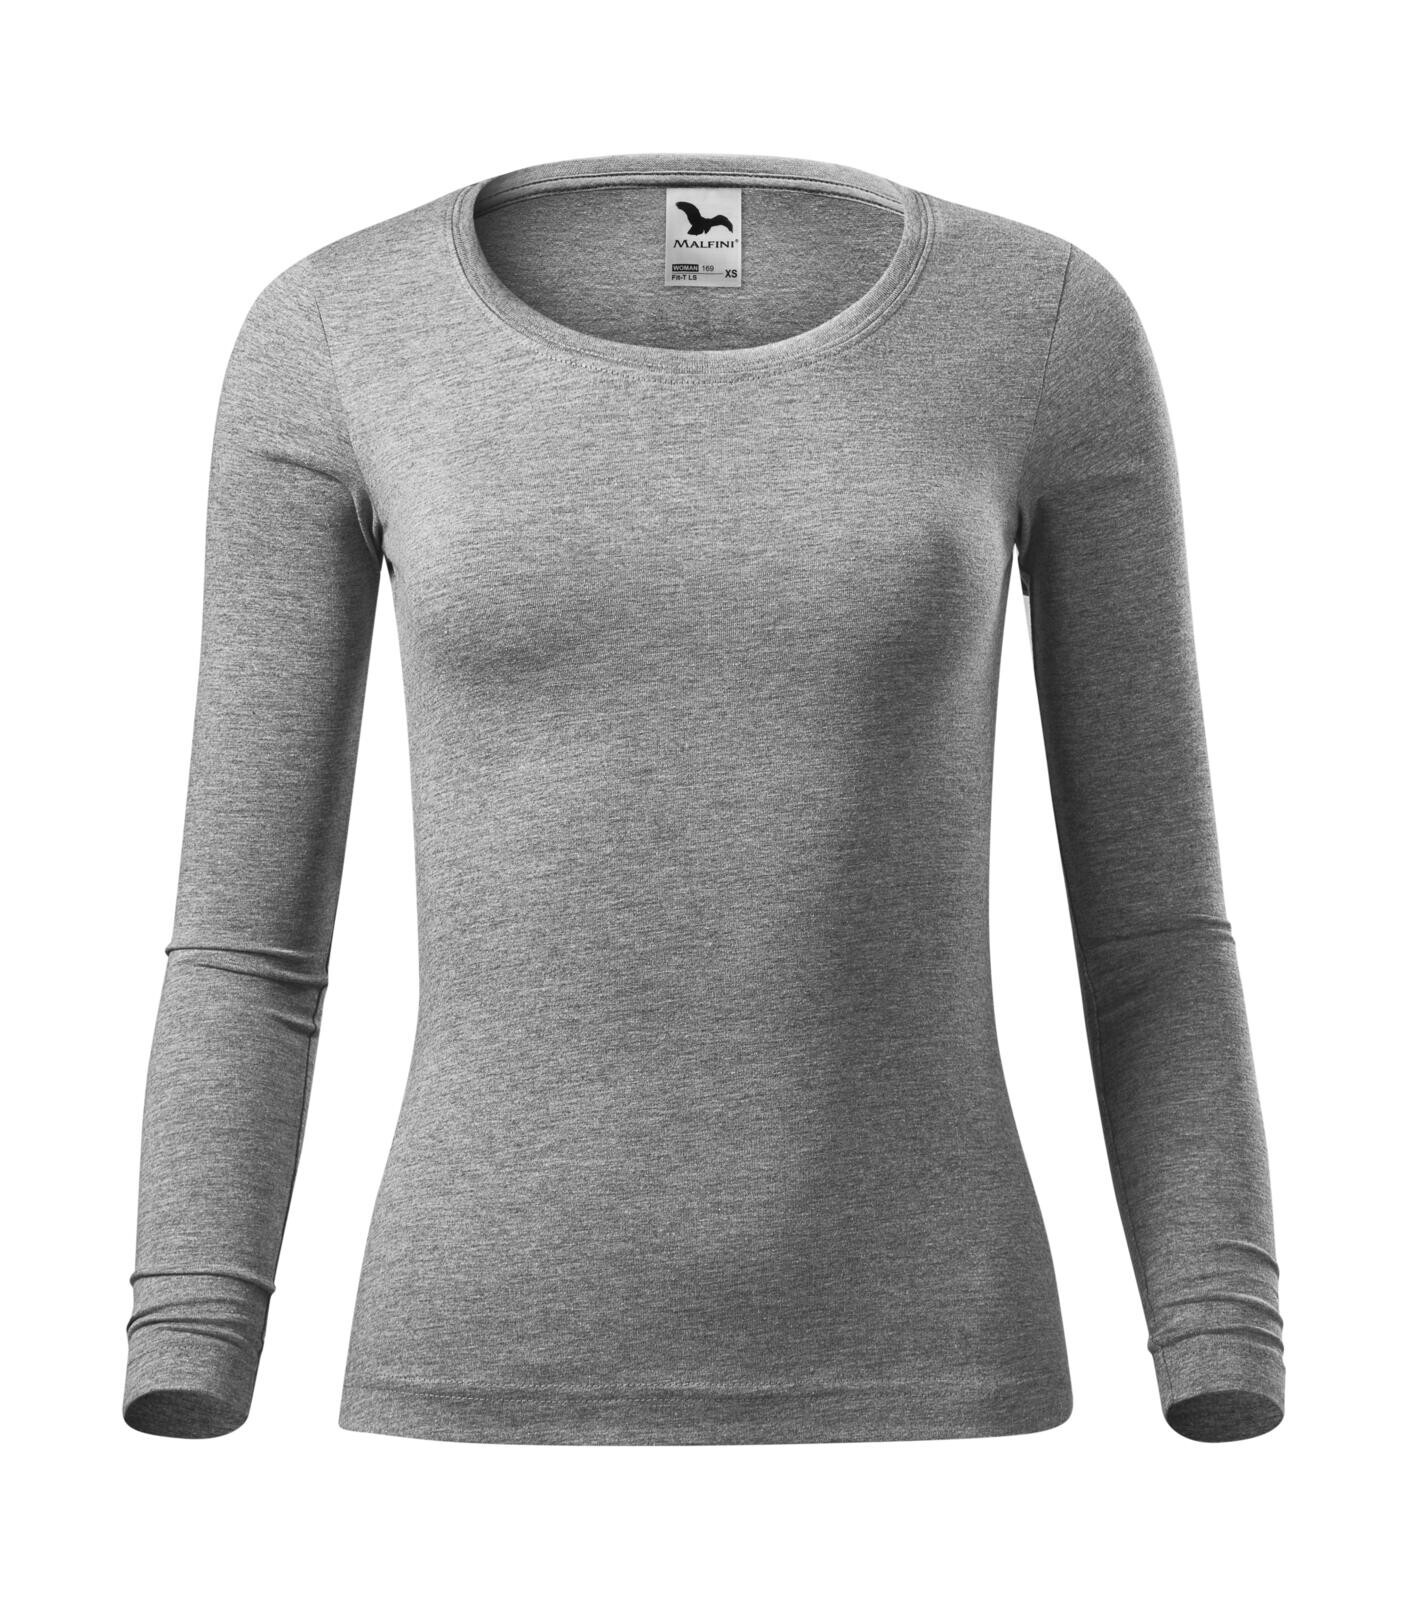 Dámske bavlnené tričko s dlhým rukávom Malfini Fit-T 169 - veľkosť: S, farba: tmavosivý melír